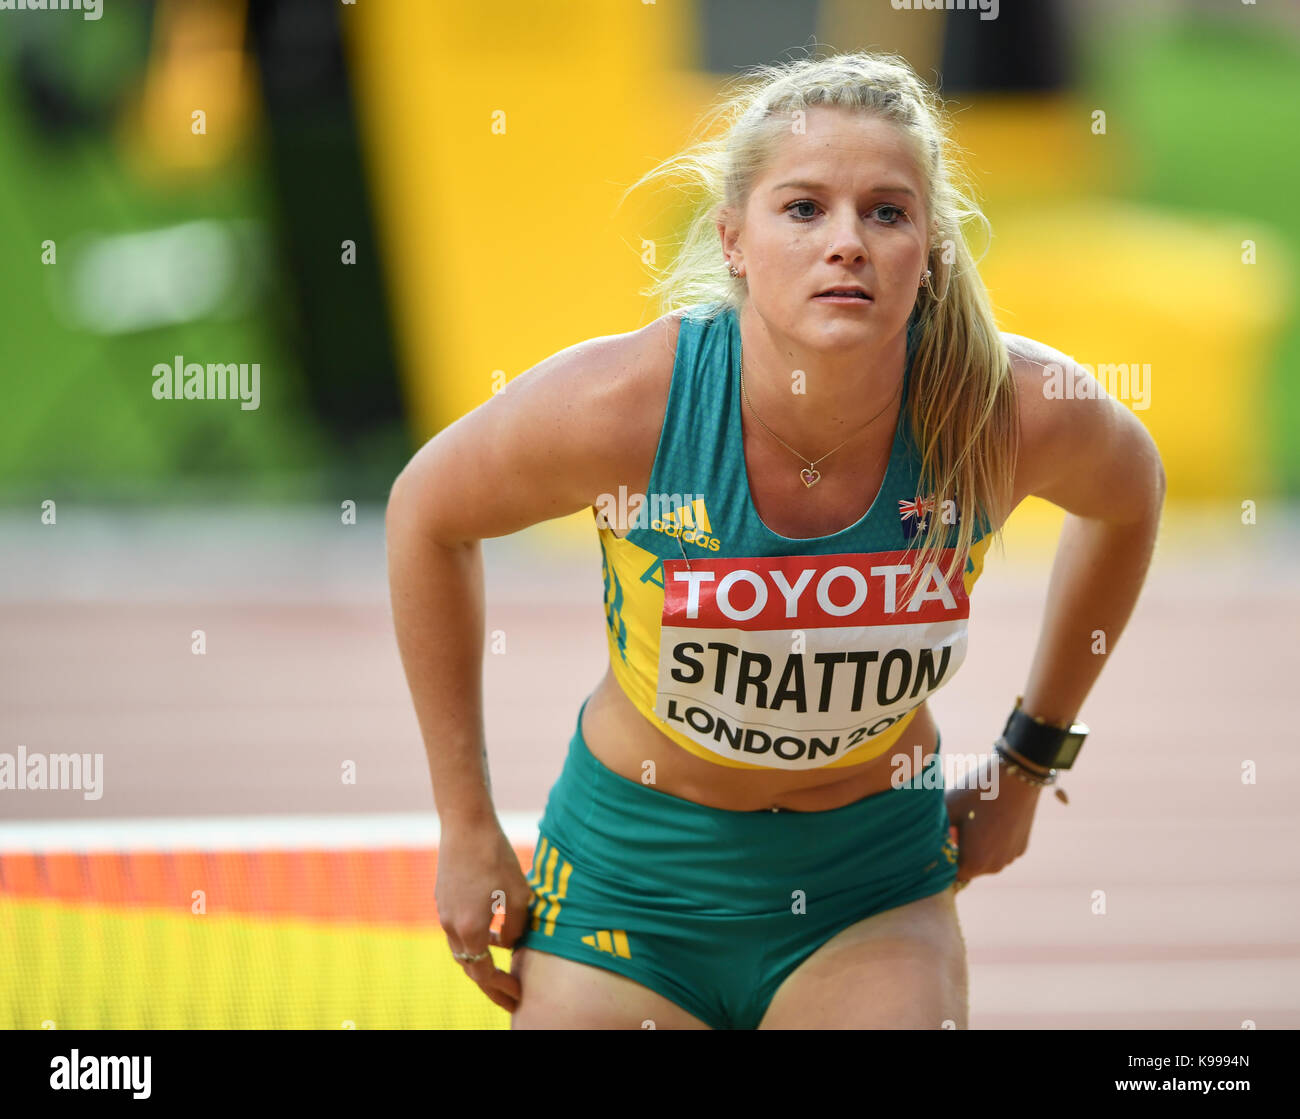 Brooke Stratton (Australie) - saut en longueur aux Championnats du monde d'athlétisme IAAF - Londres - 2017 Banque D'Images